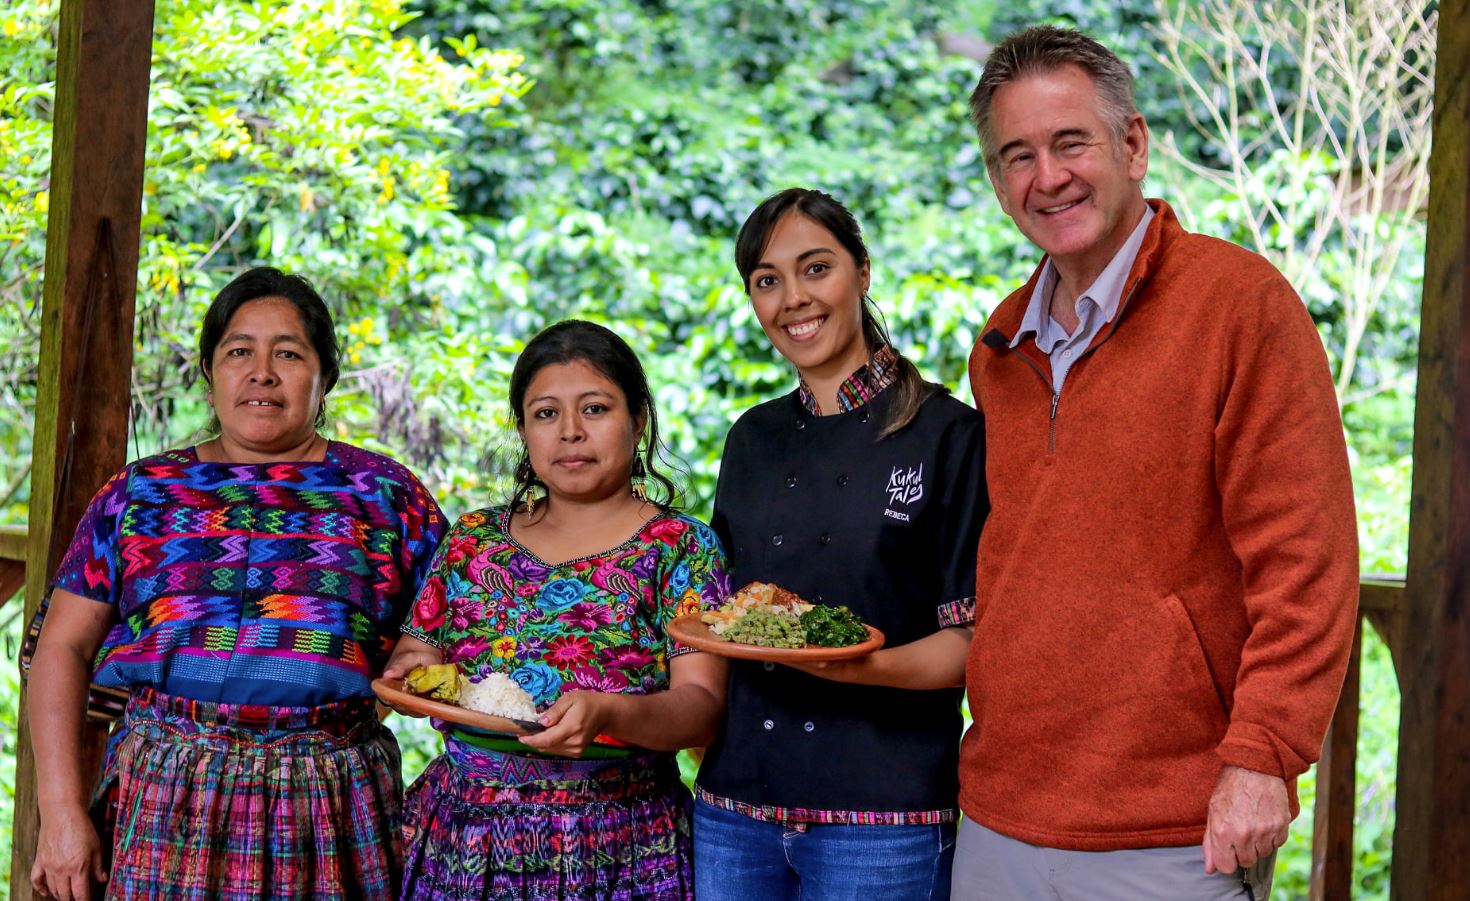 Nigel Marven visitó varios lugares de Guatemala durante el 2019. (Foto Prensa Libre: kukul tales)